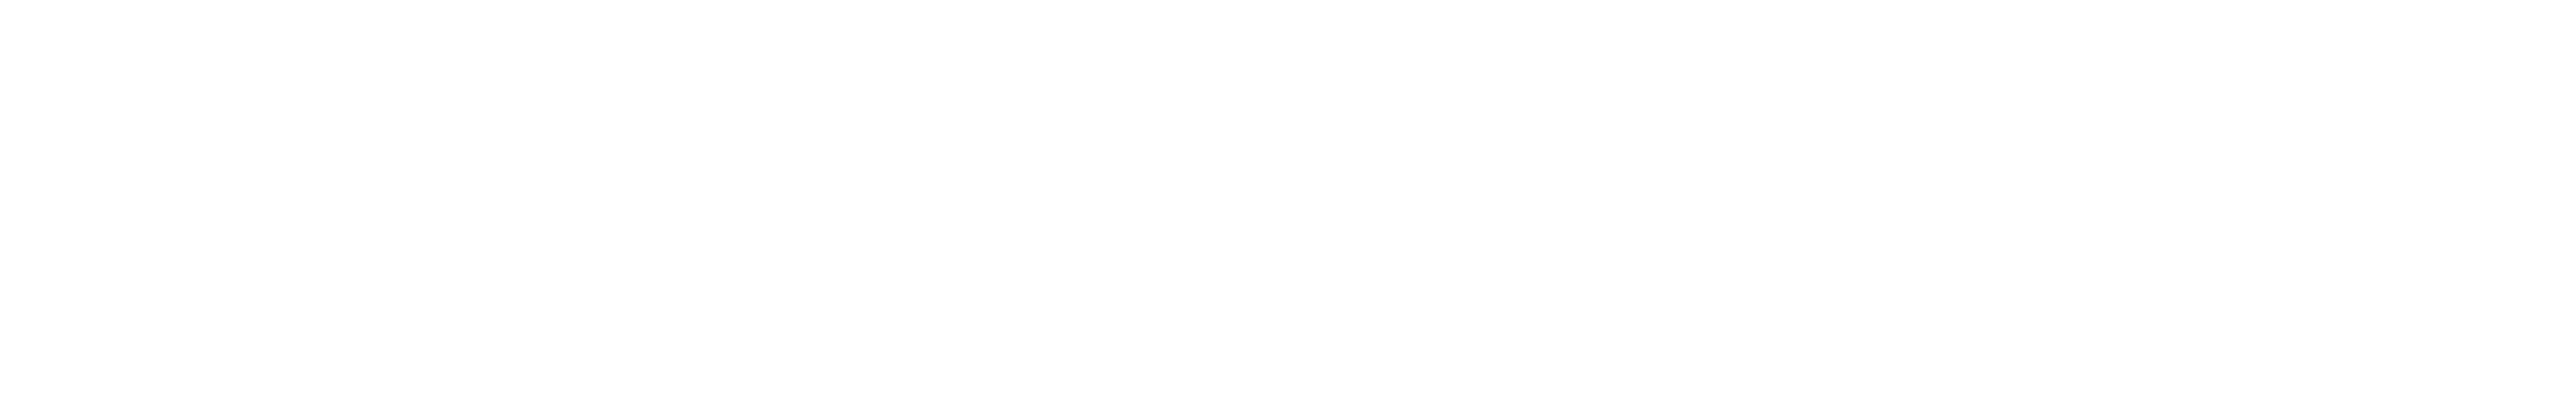 MPLEXVR Logo